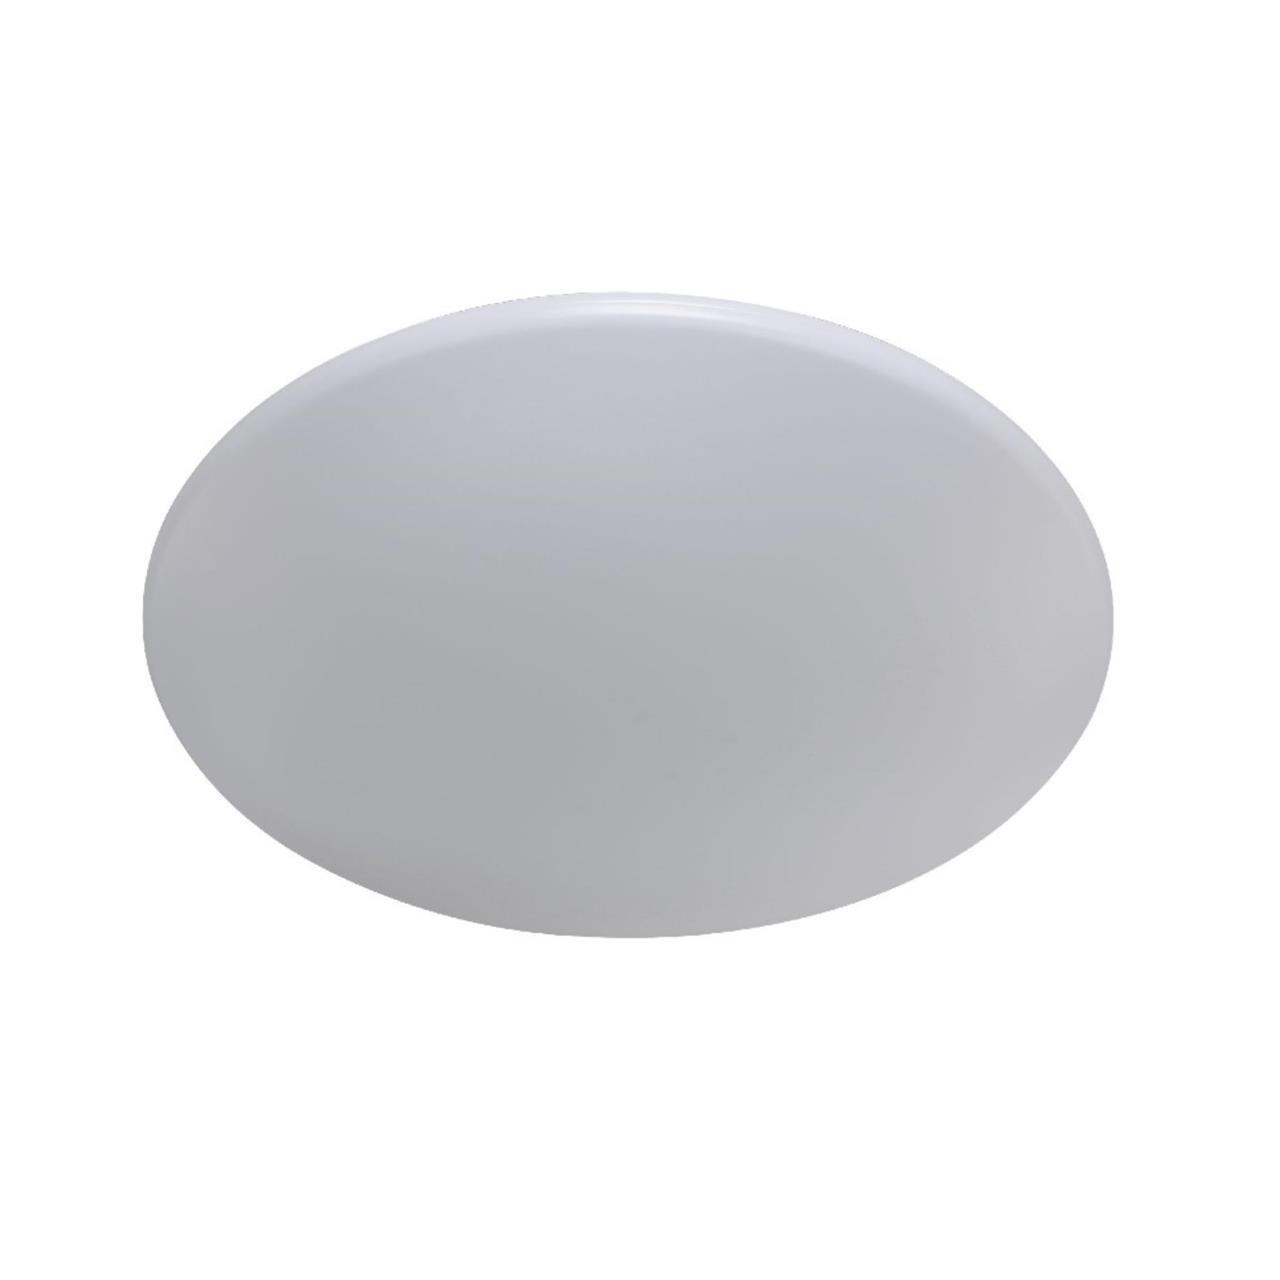 90159599 Светильник потолочный светодиодный LUNA LUNA PL80-3 17 м² теплый белый свет цвет белый STLM-0120222 CRYSTAL LUX